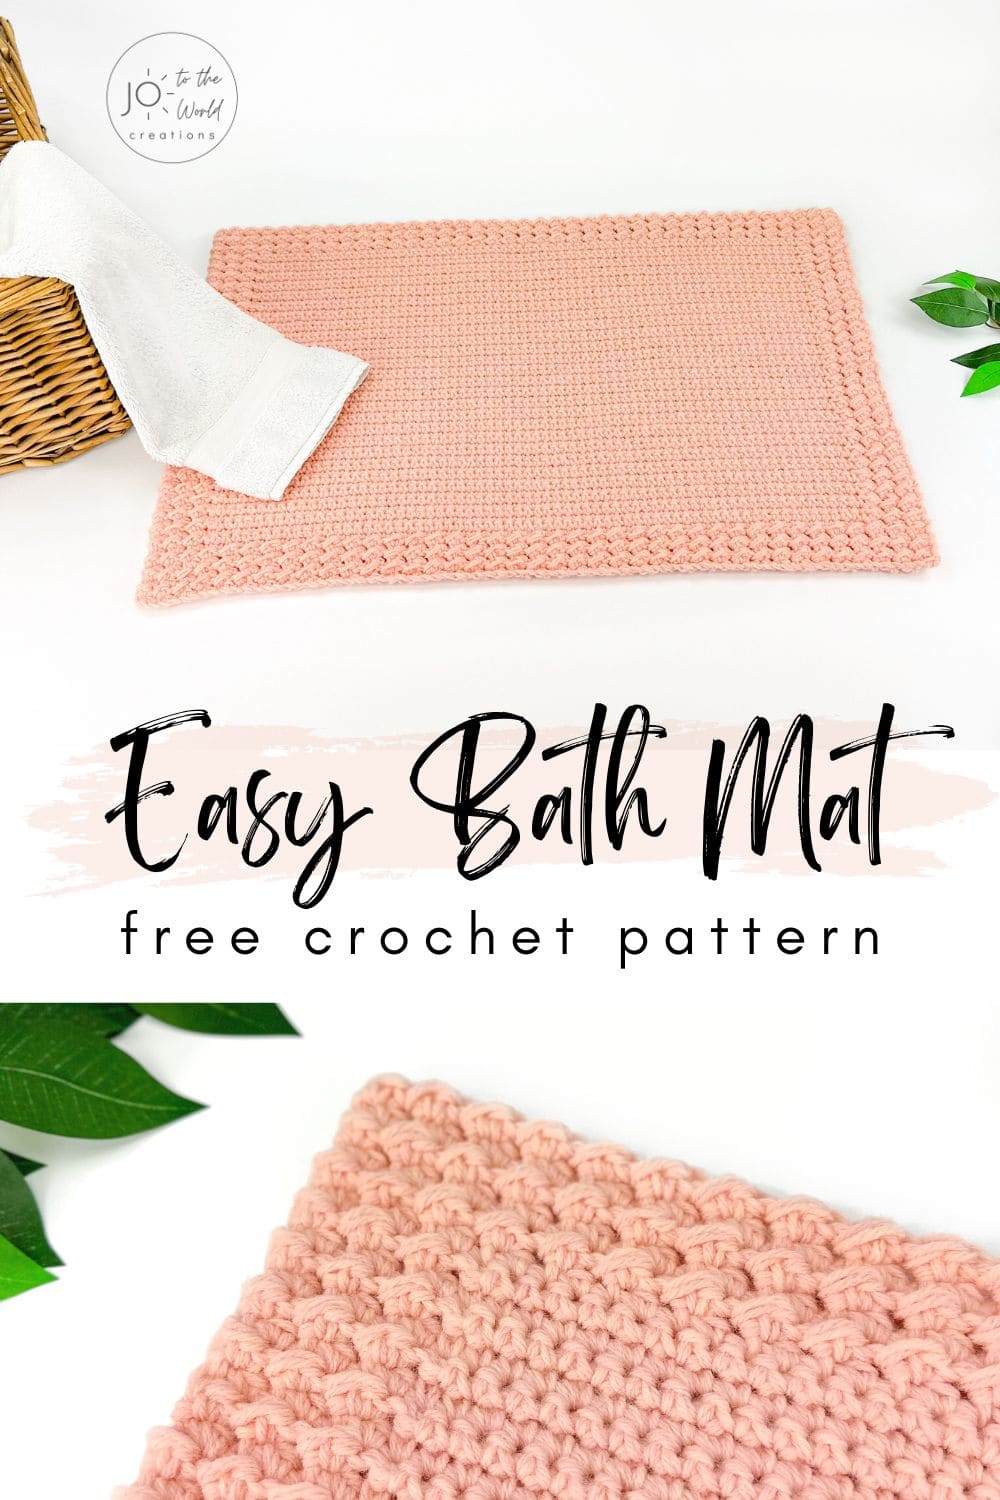 Easy bath mat crochet pattern free